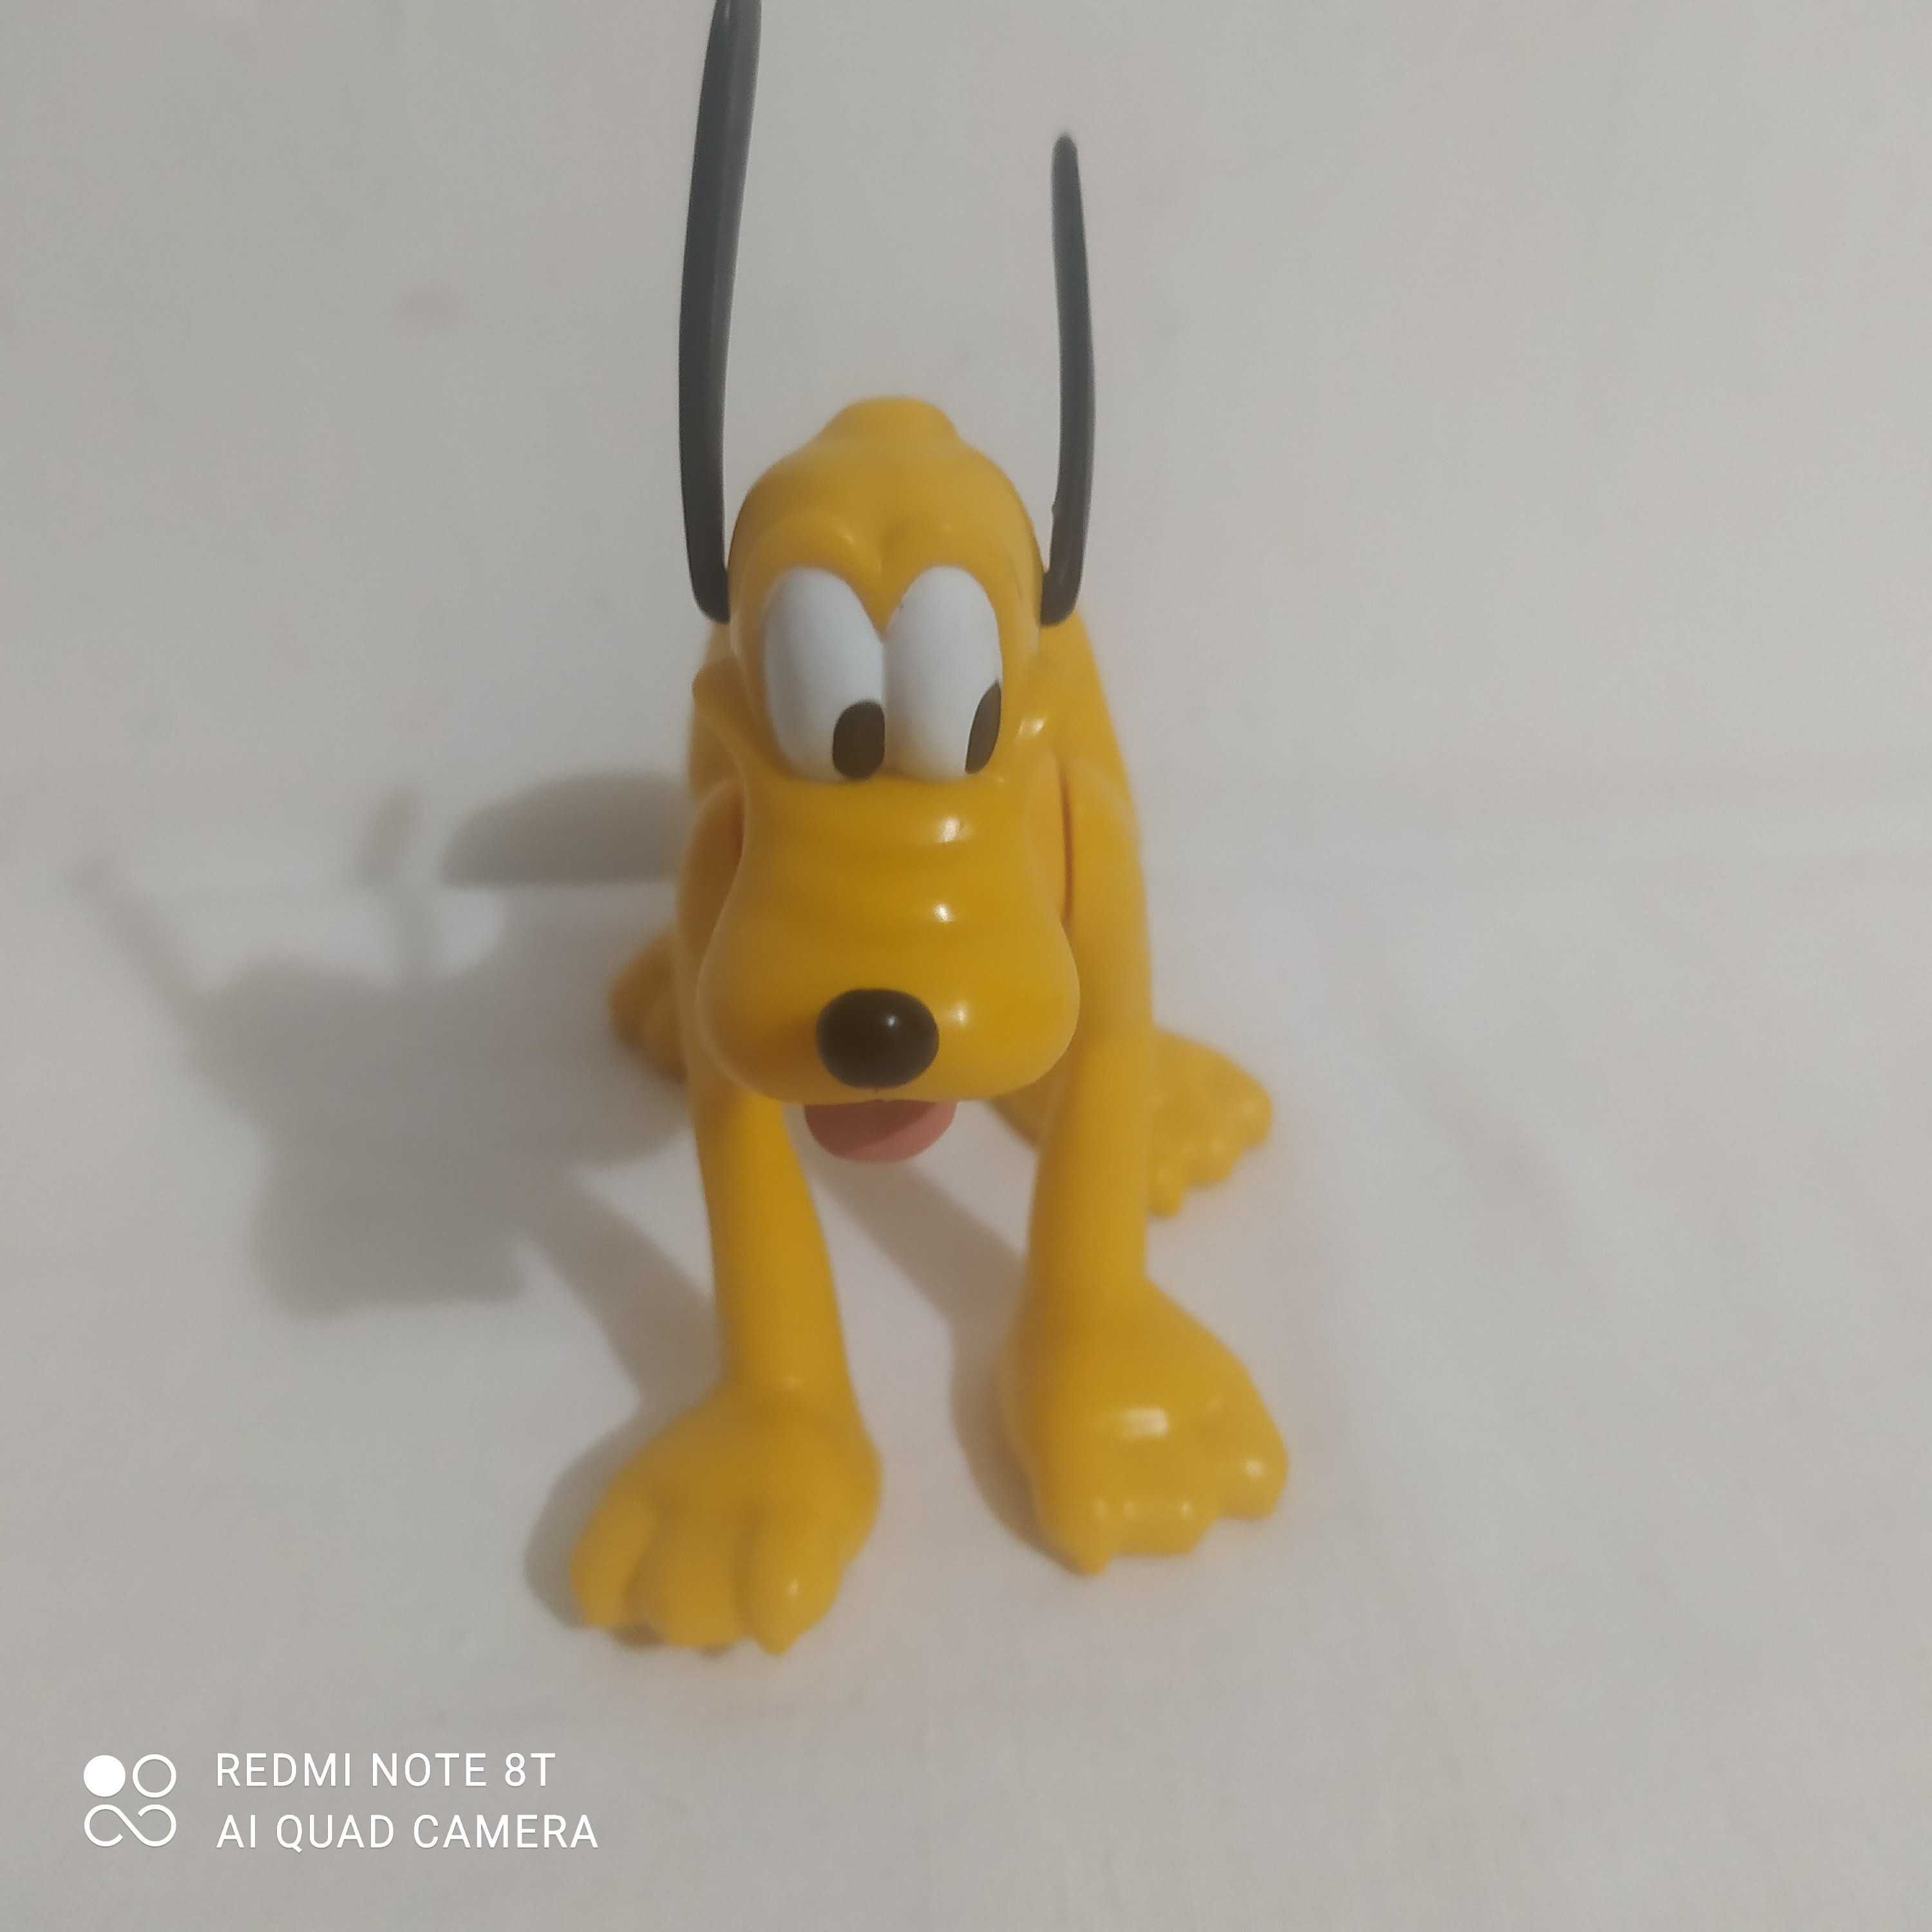 Figurka Pluto z bajki Disney